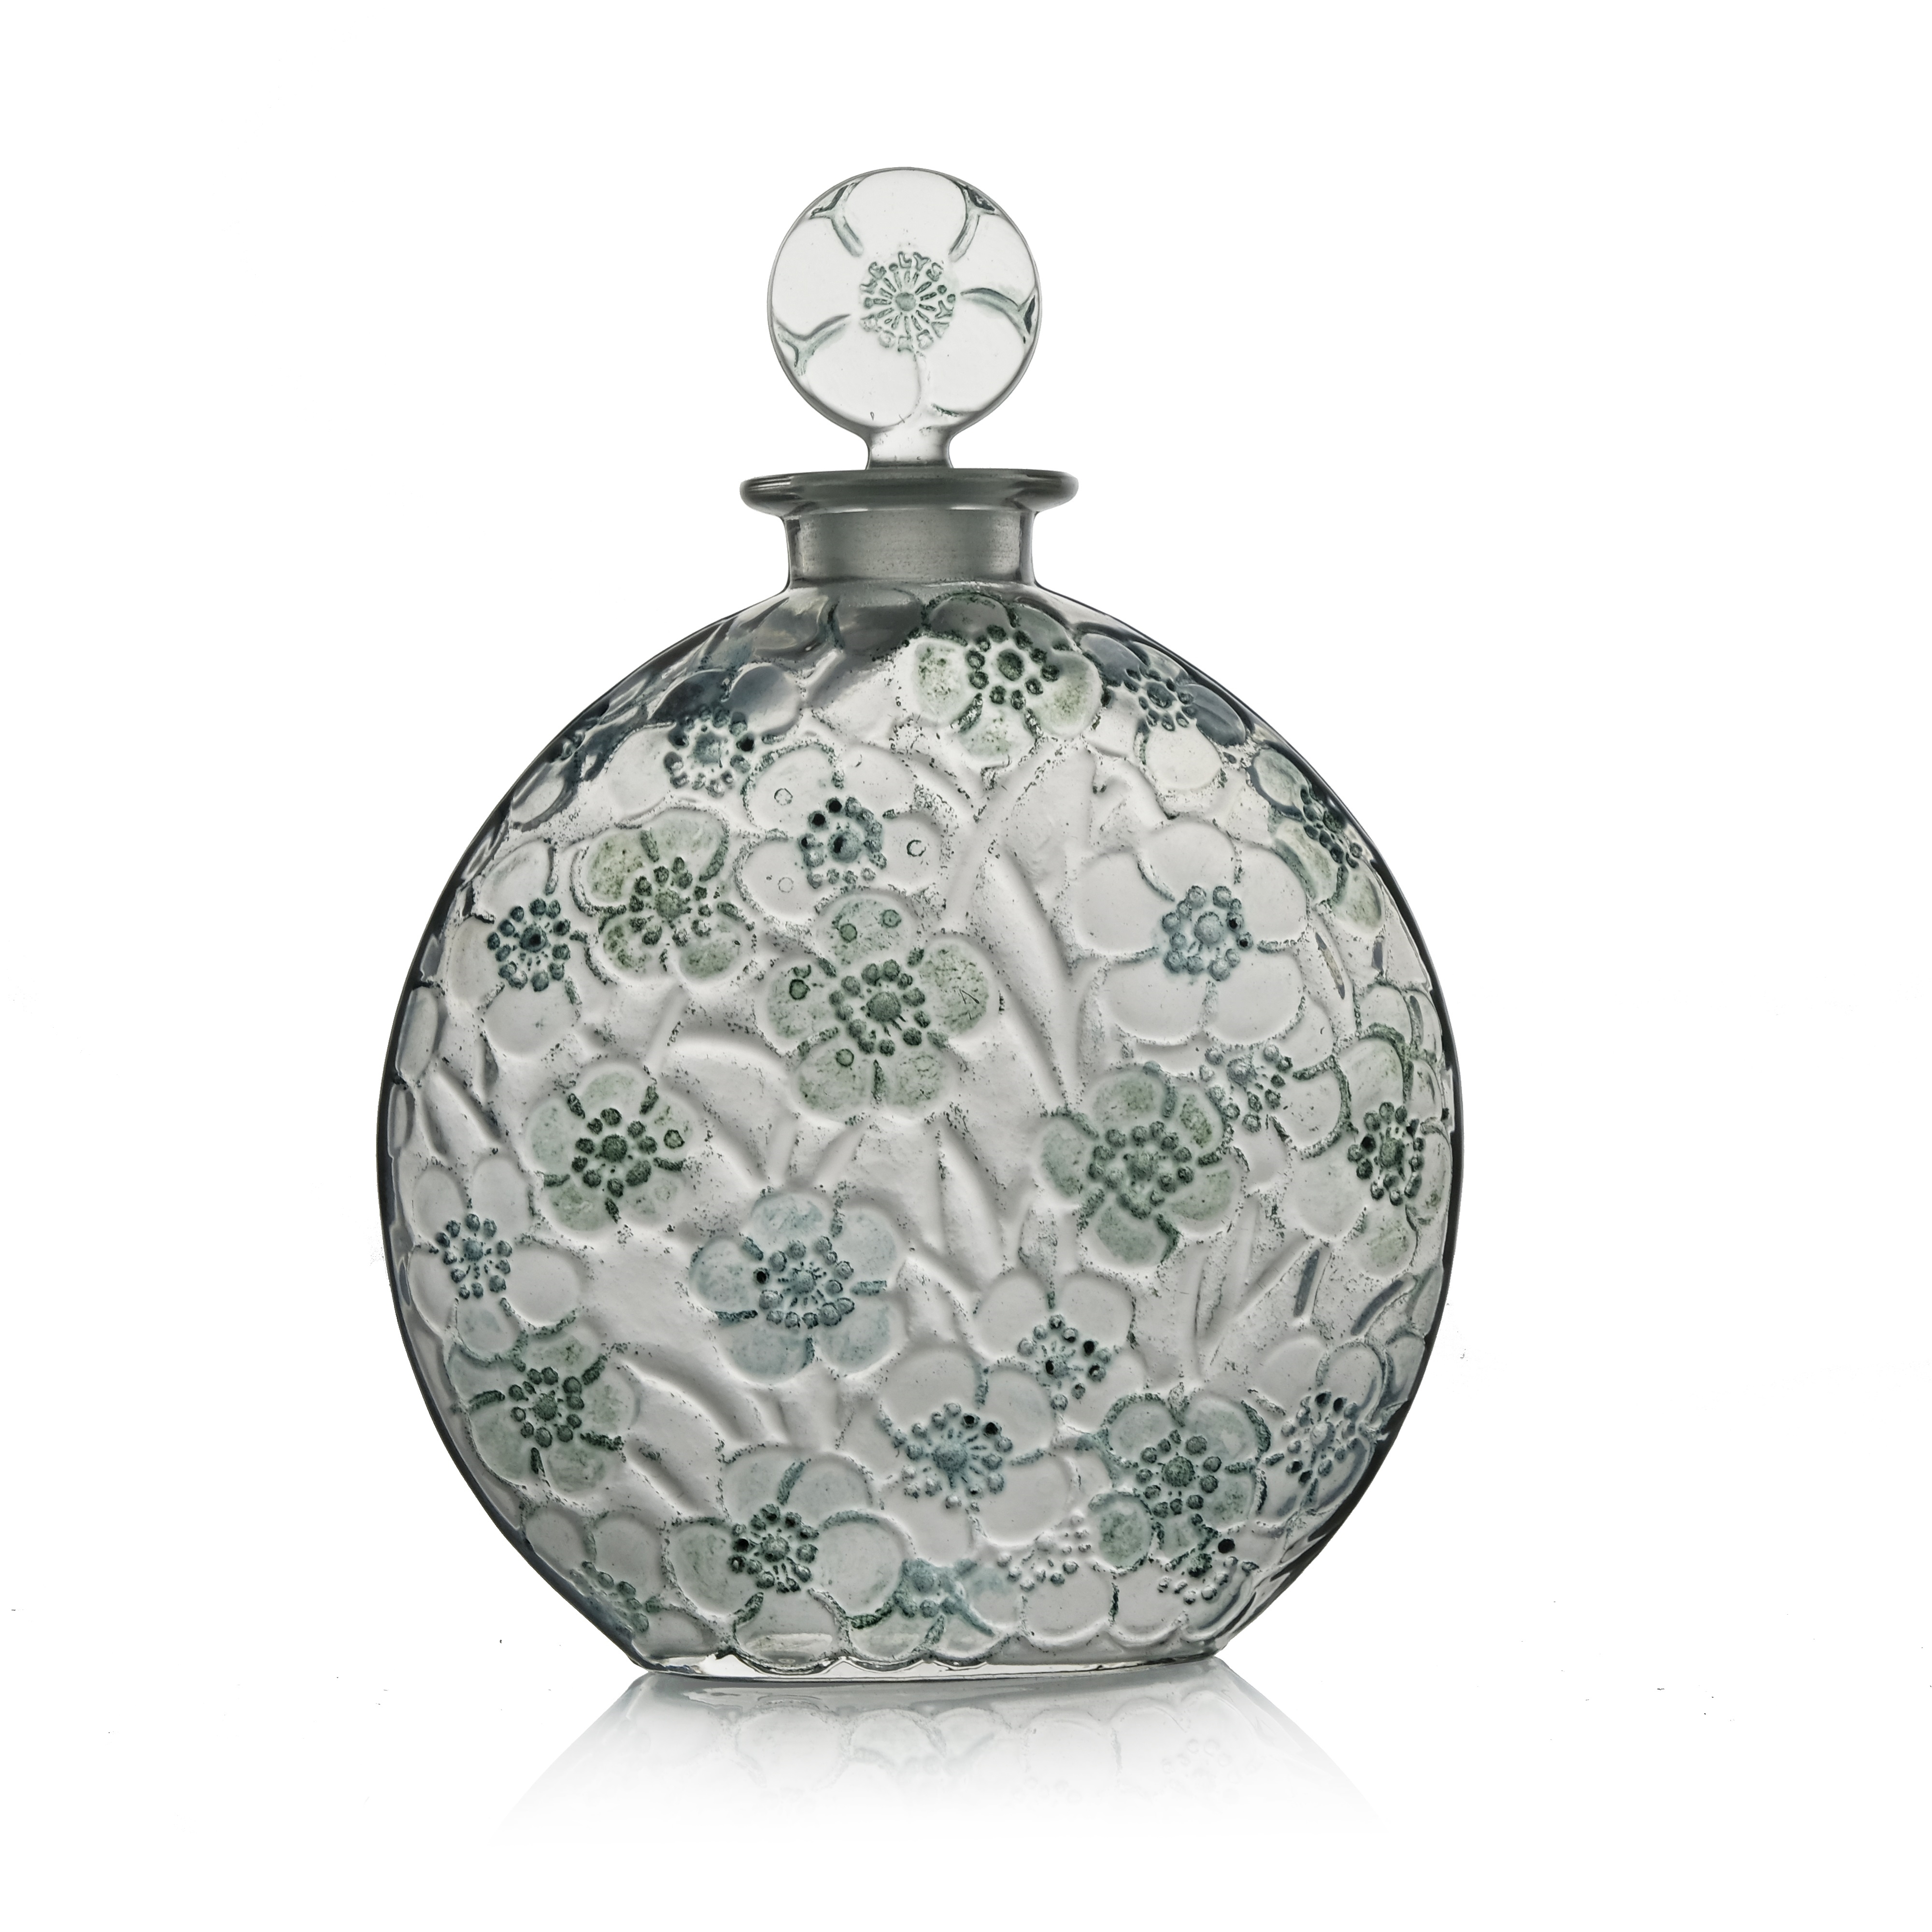 a Le Lys glass perfume bottle by René Lalique, designed circa 1920